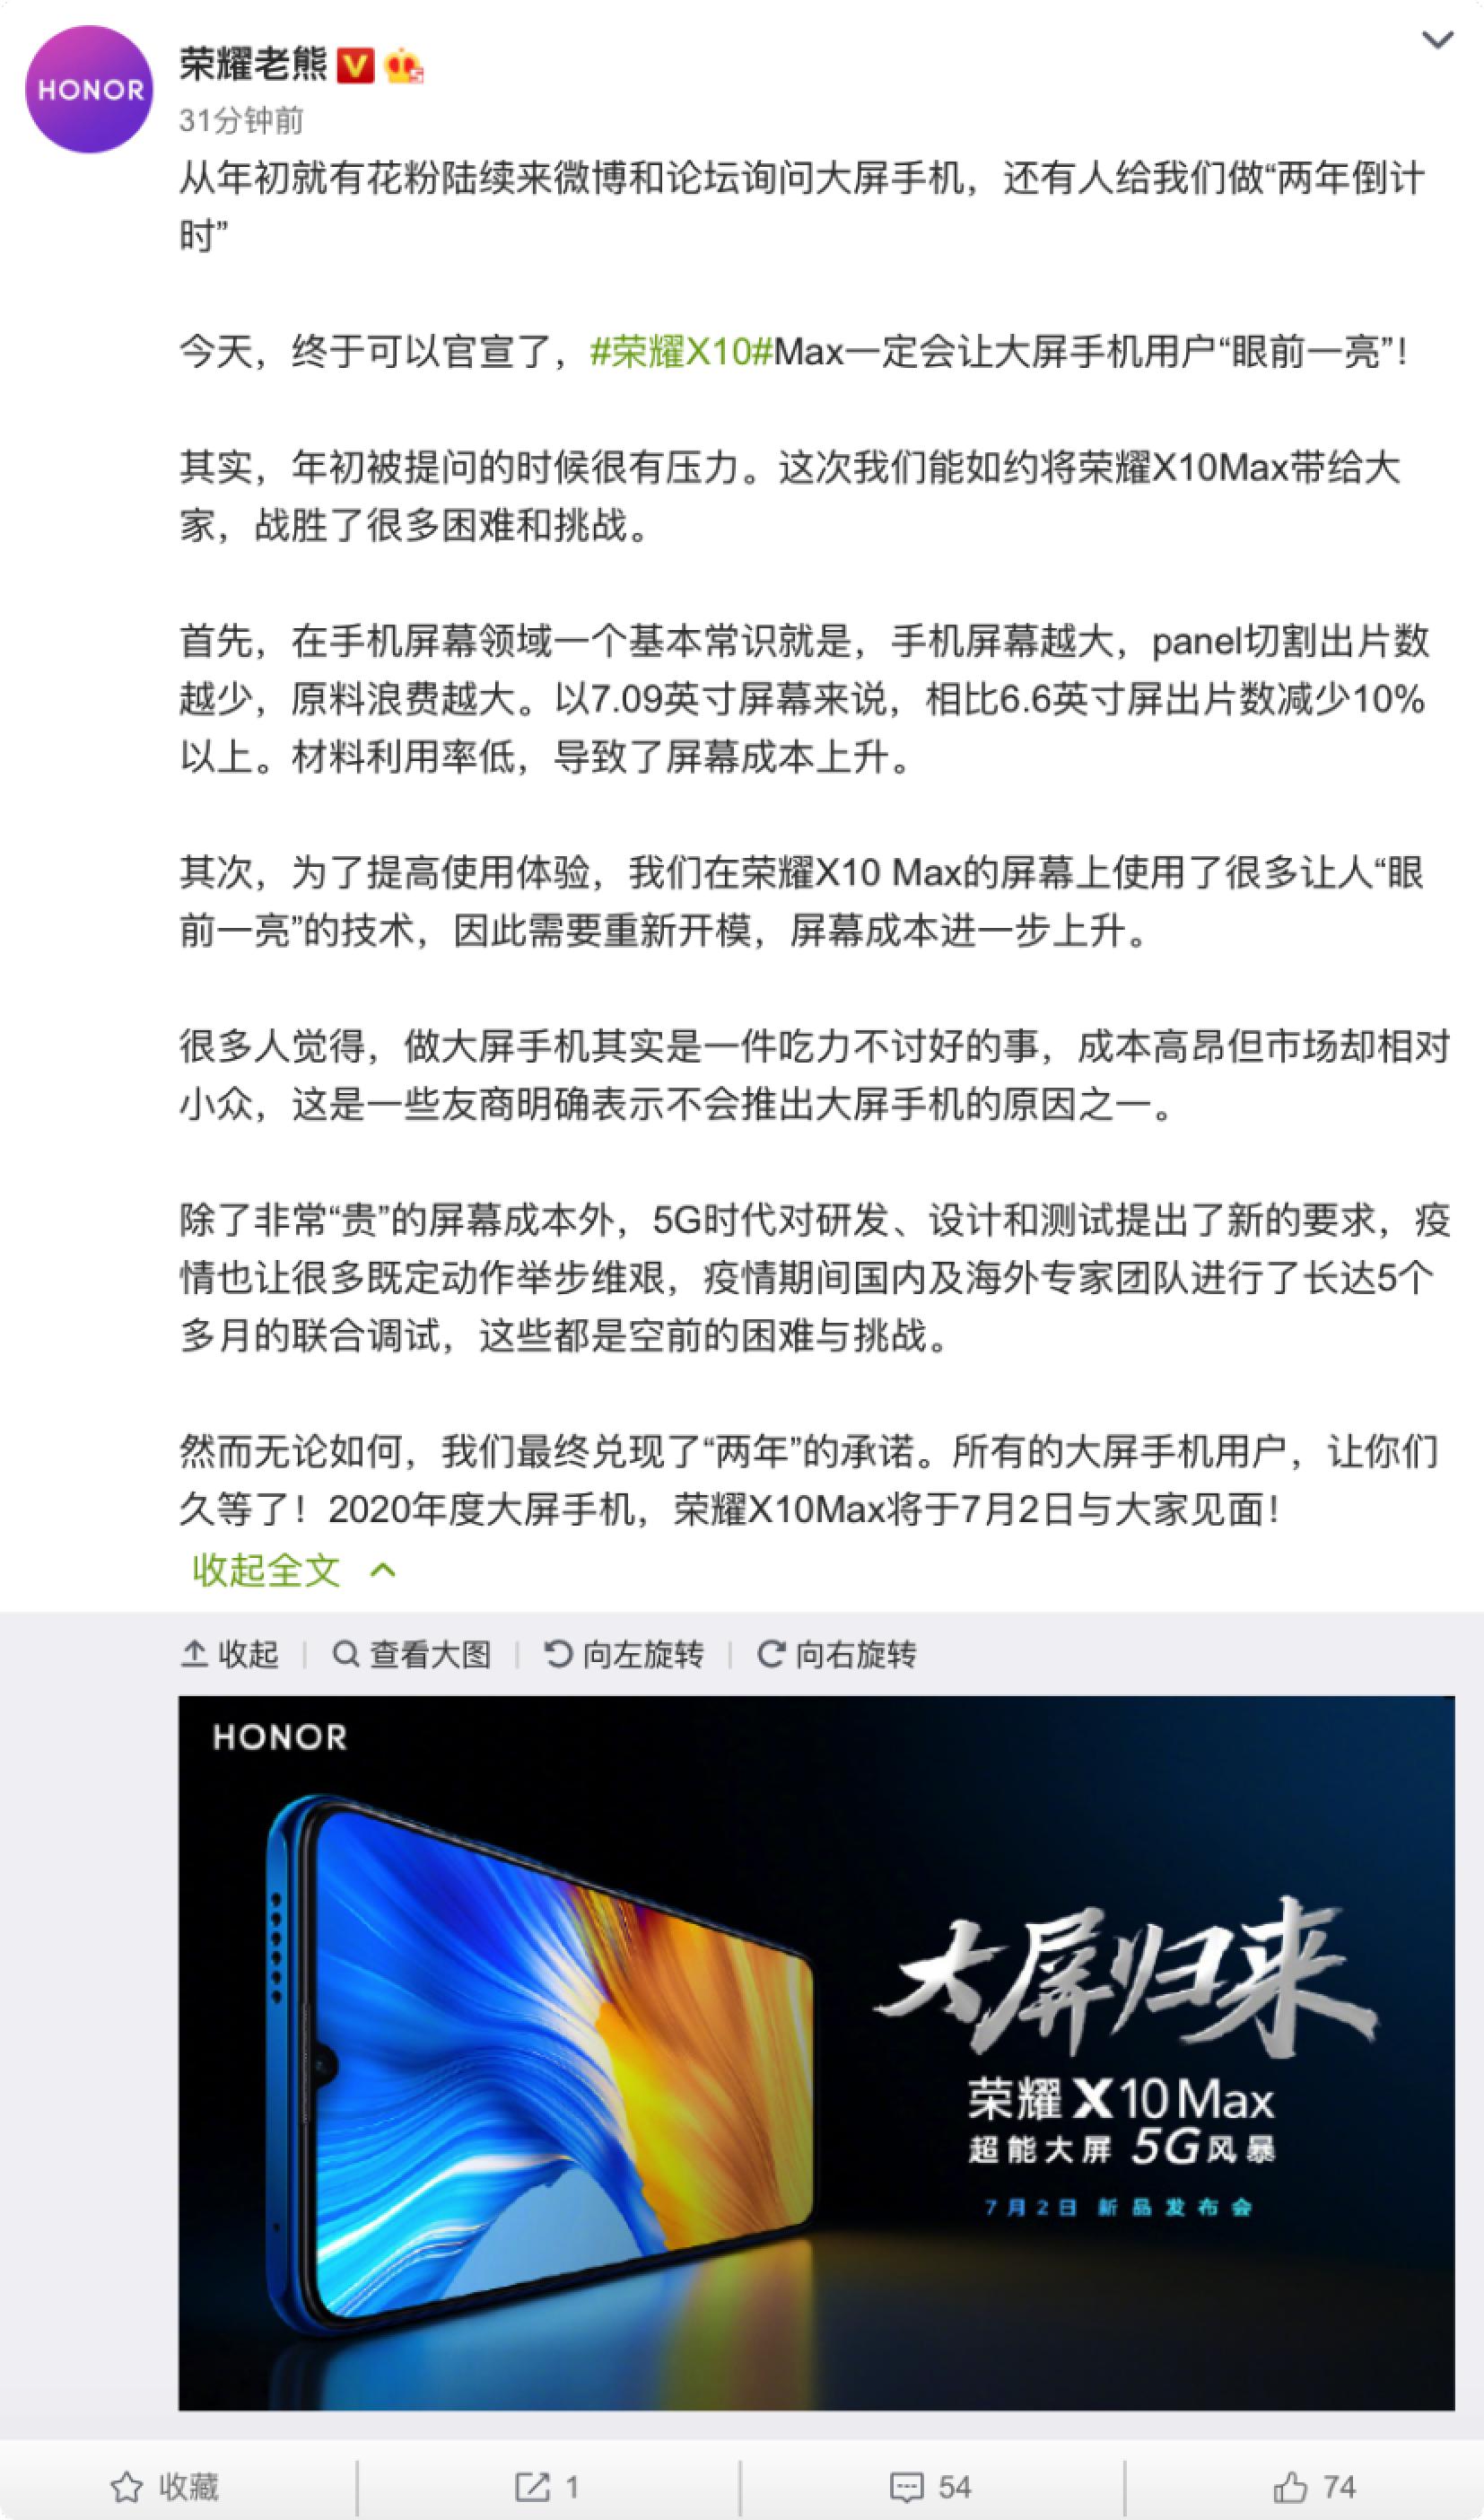 官方宣布！荣耀X10 Max上映的7月2日，7英寸超大型屏扶持